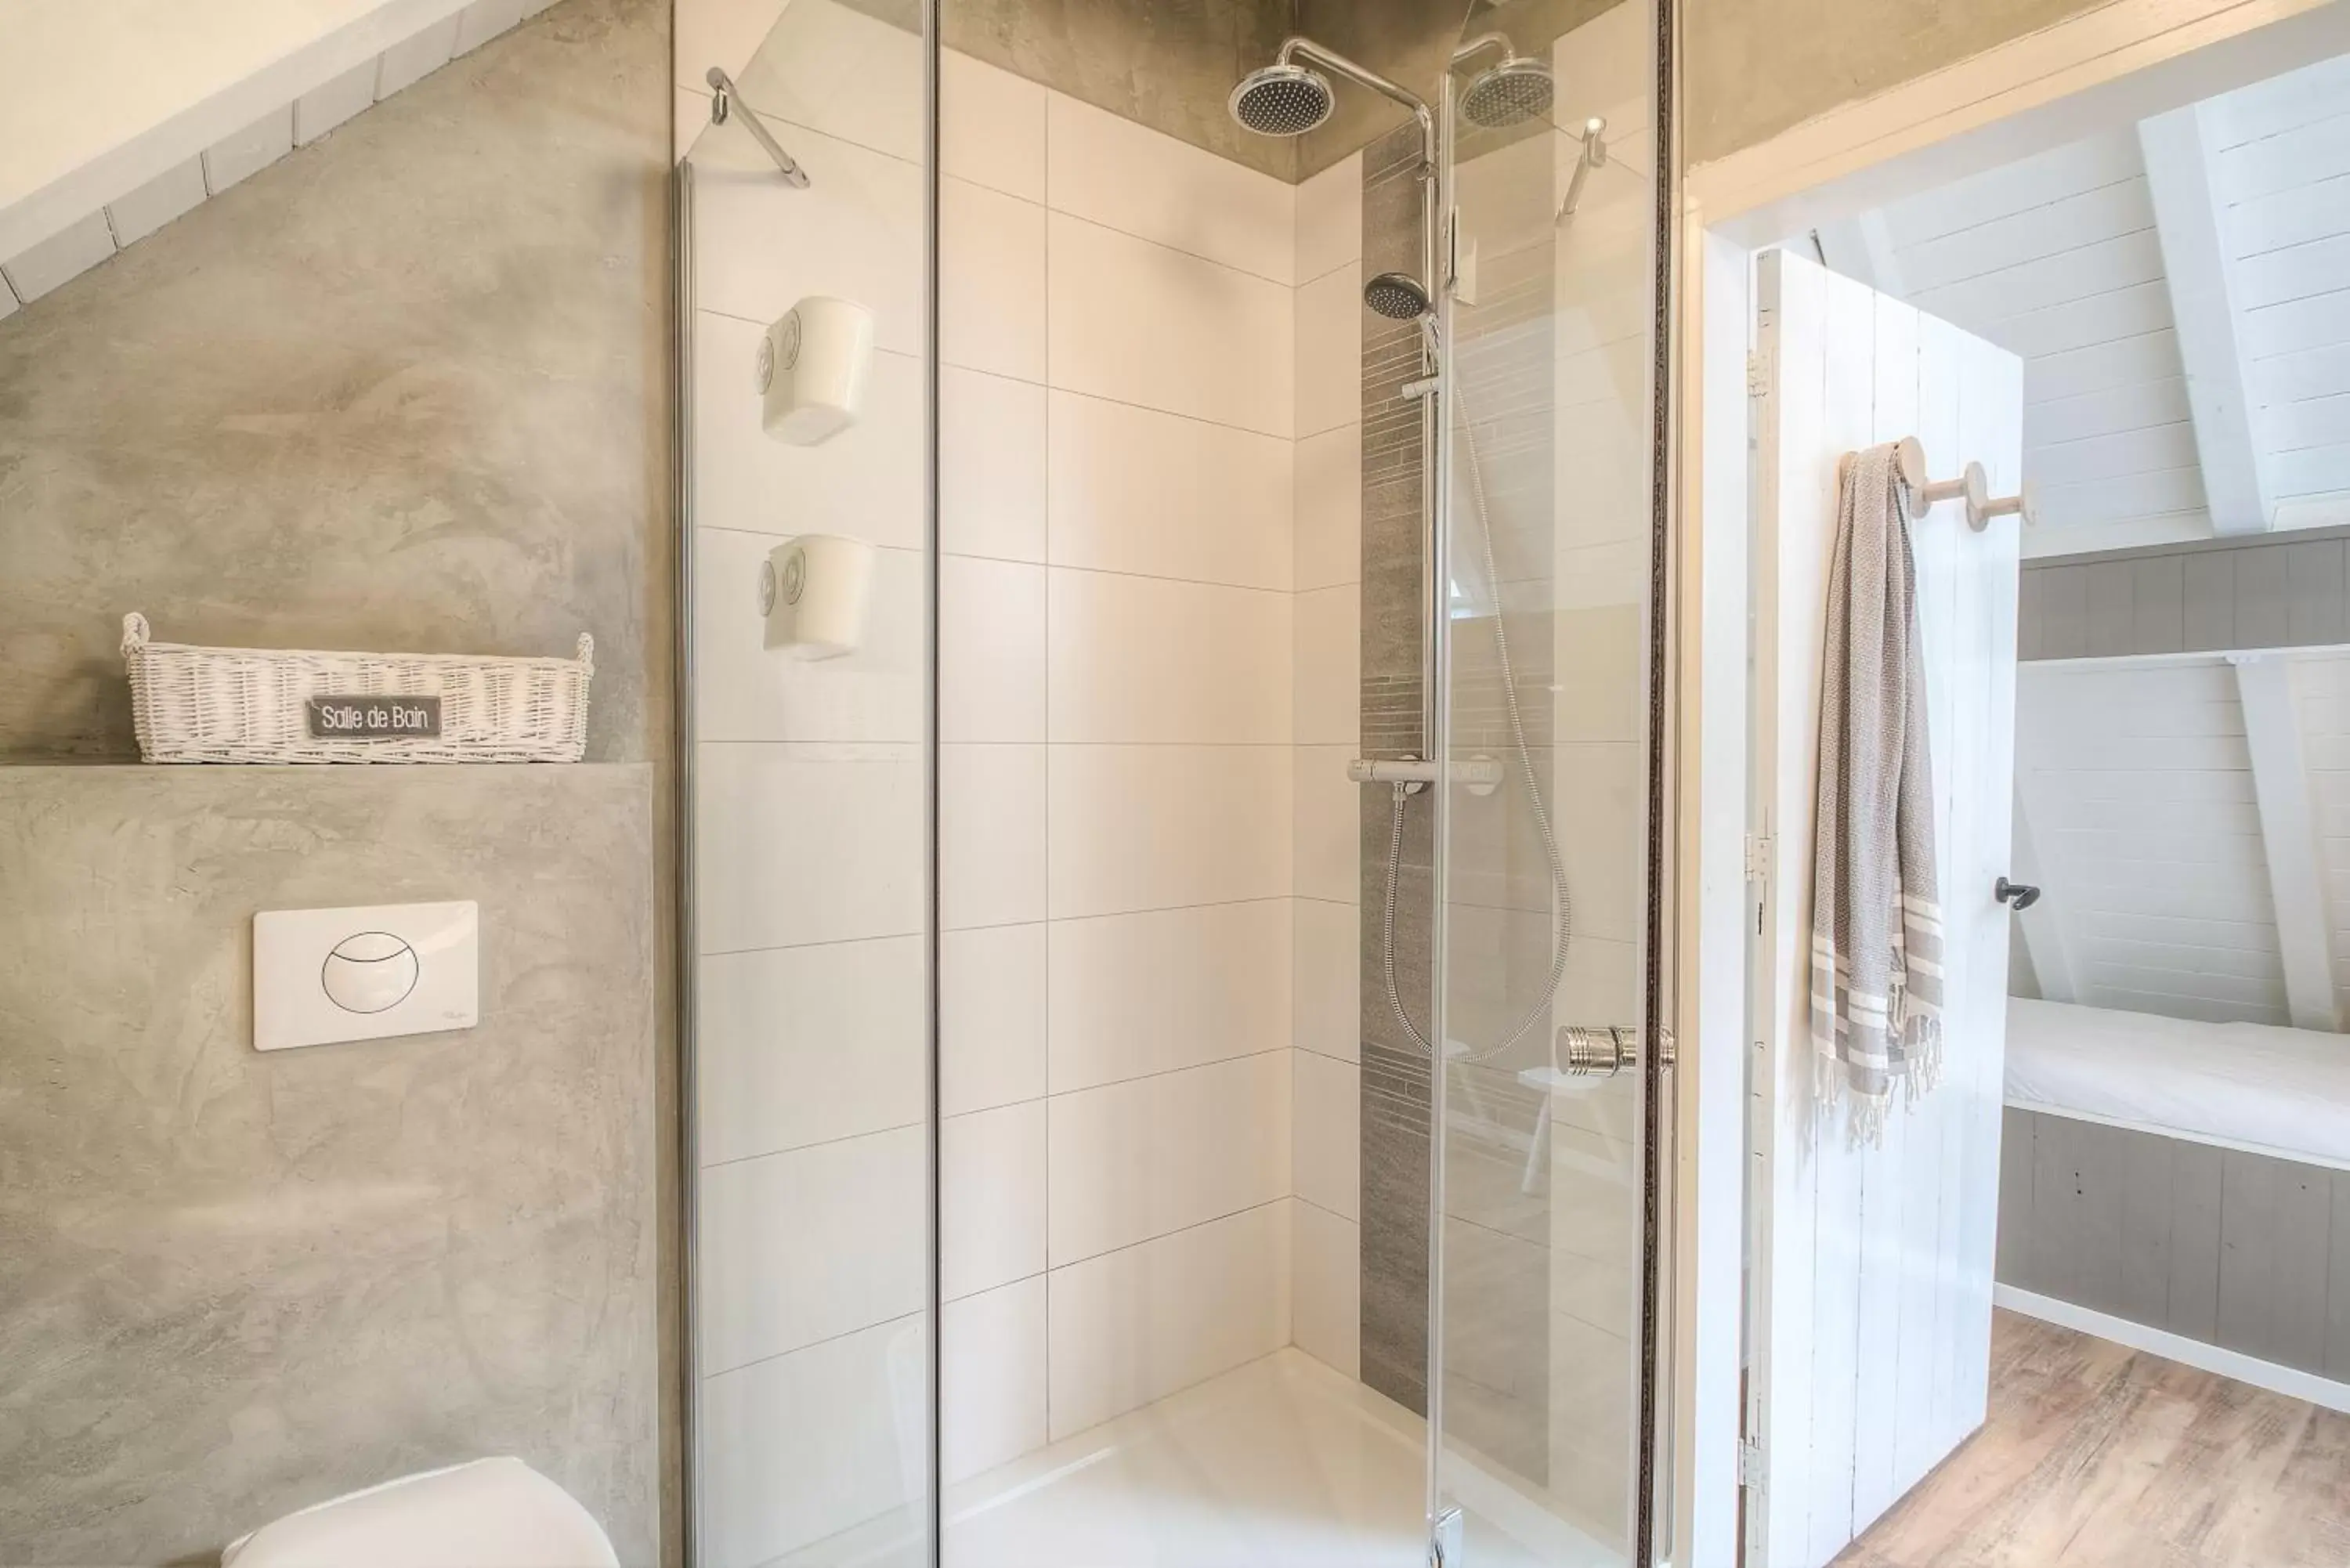 Shower, Bathroom in Appartement De Koesfabriek centrum Dokkum